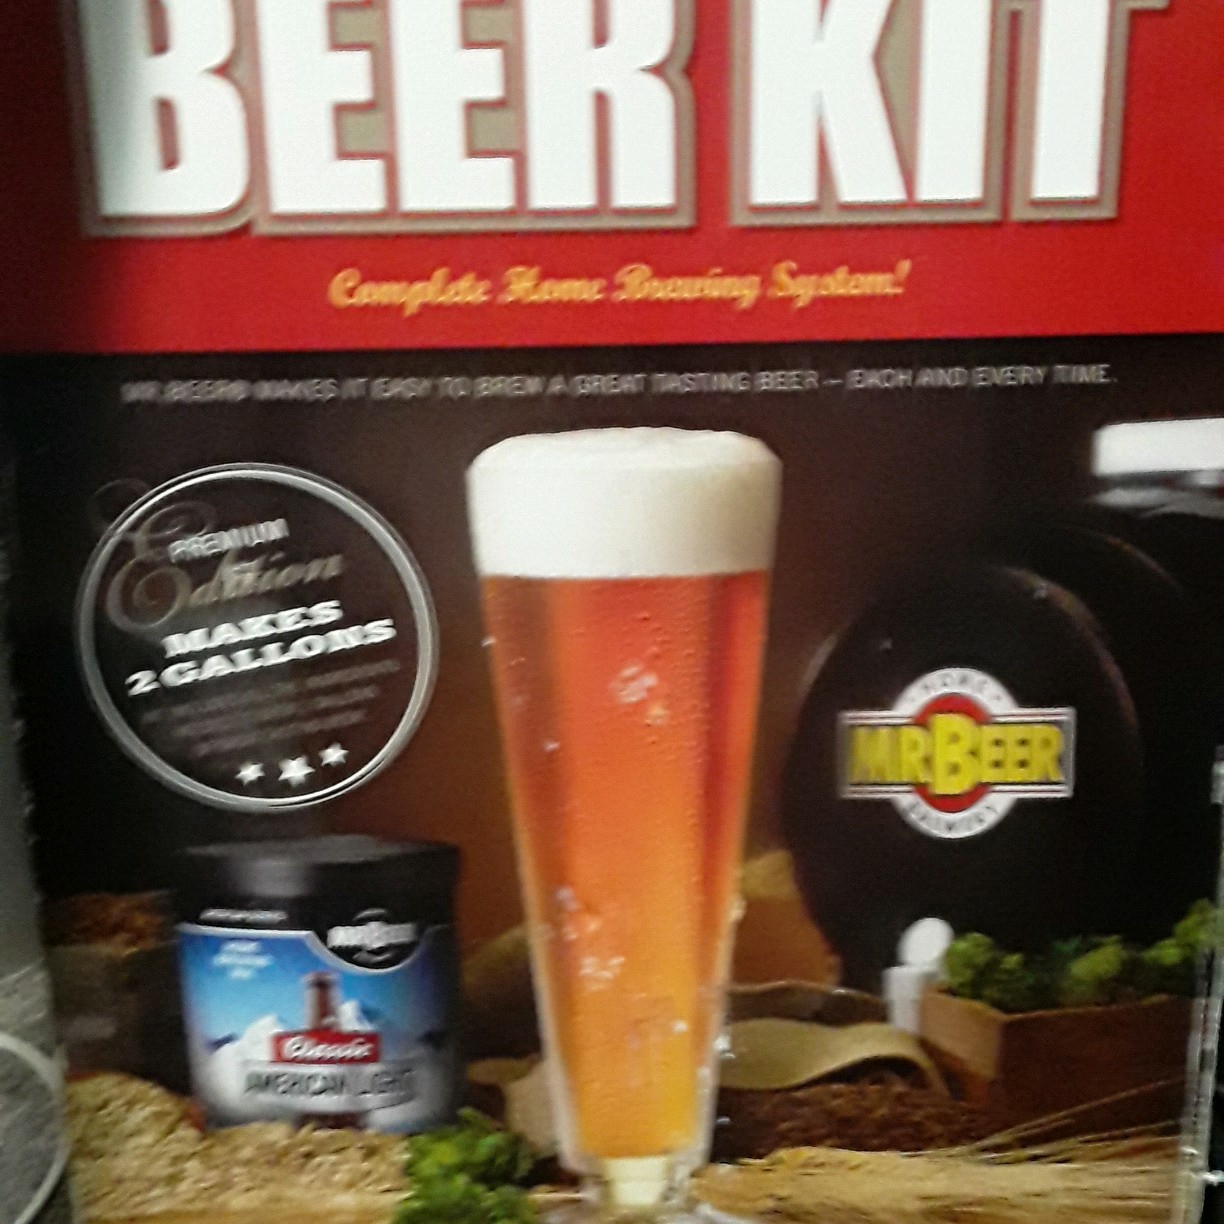 beer brewing kit